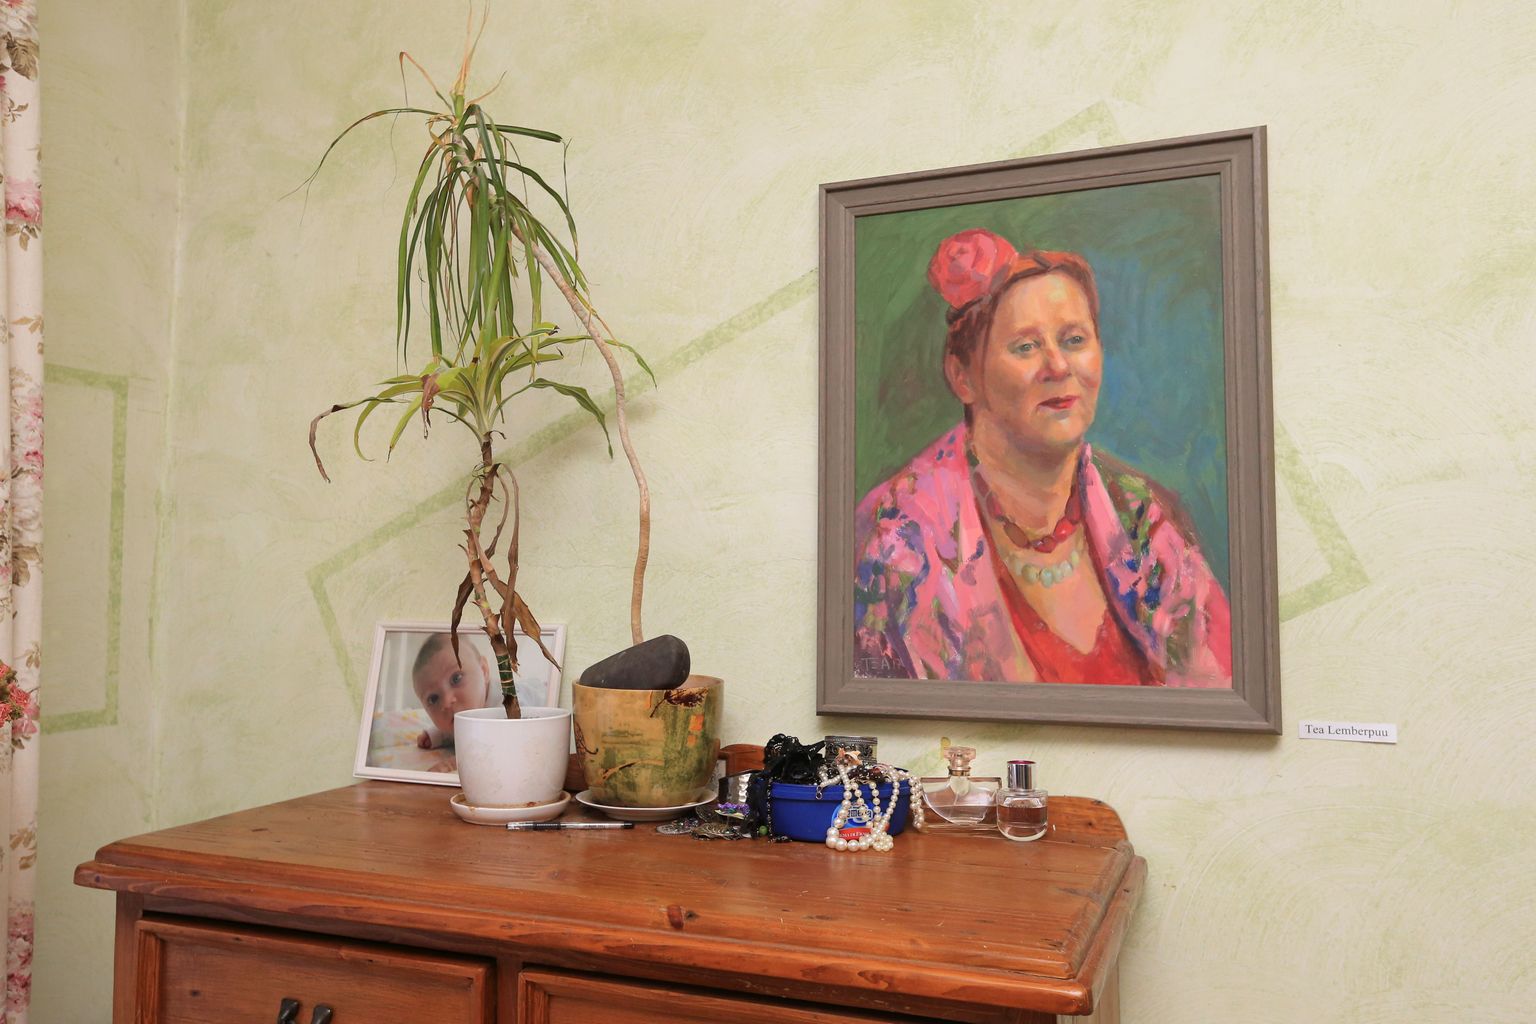 Voronja galerii seni viimane korternäitus oli Supilinnas Gea Kangilaski kodus. Teiste teoste hulgas oli välja pandud Merca portree, mille autor on Tea Lemberpuu.